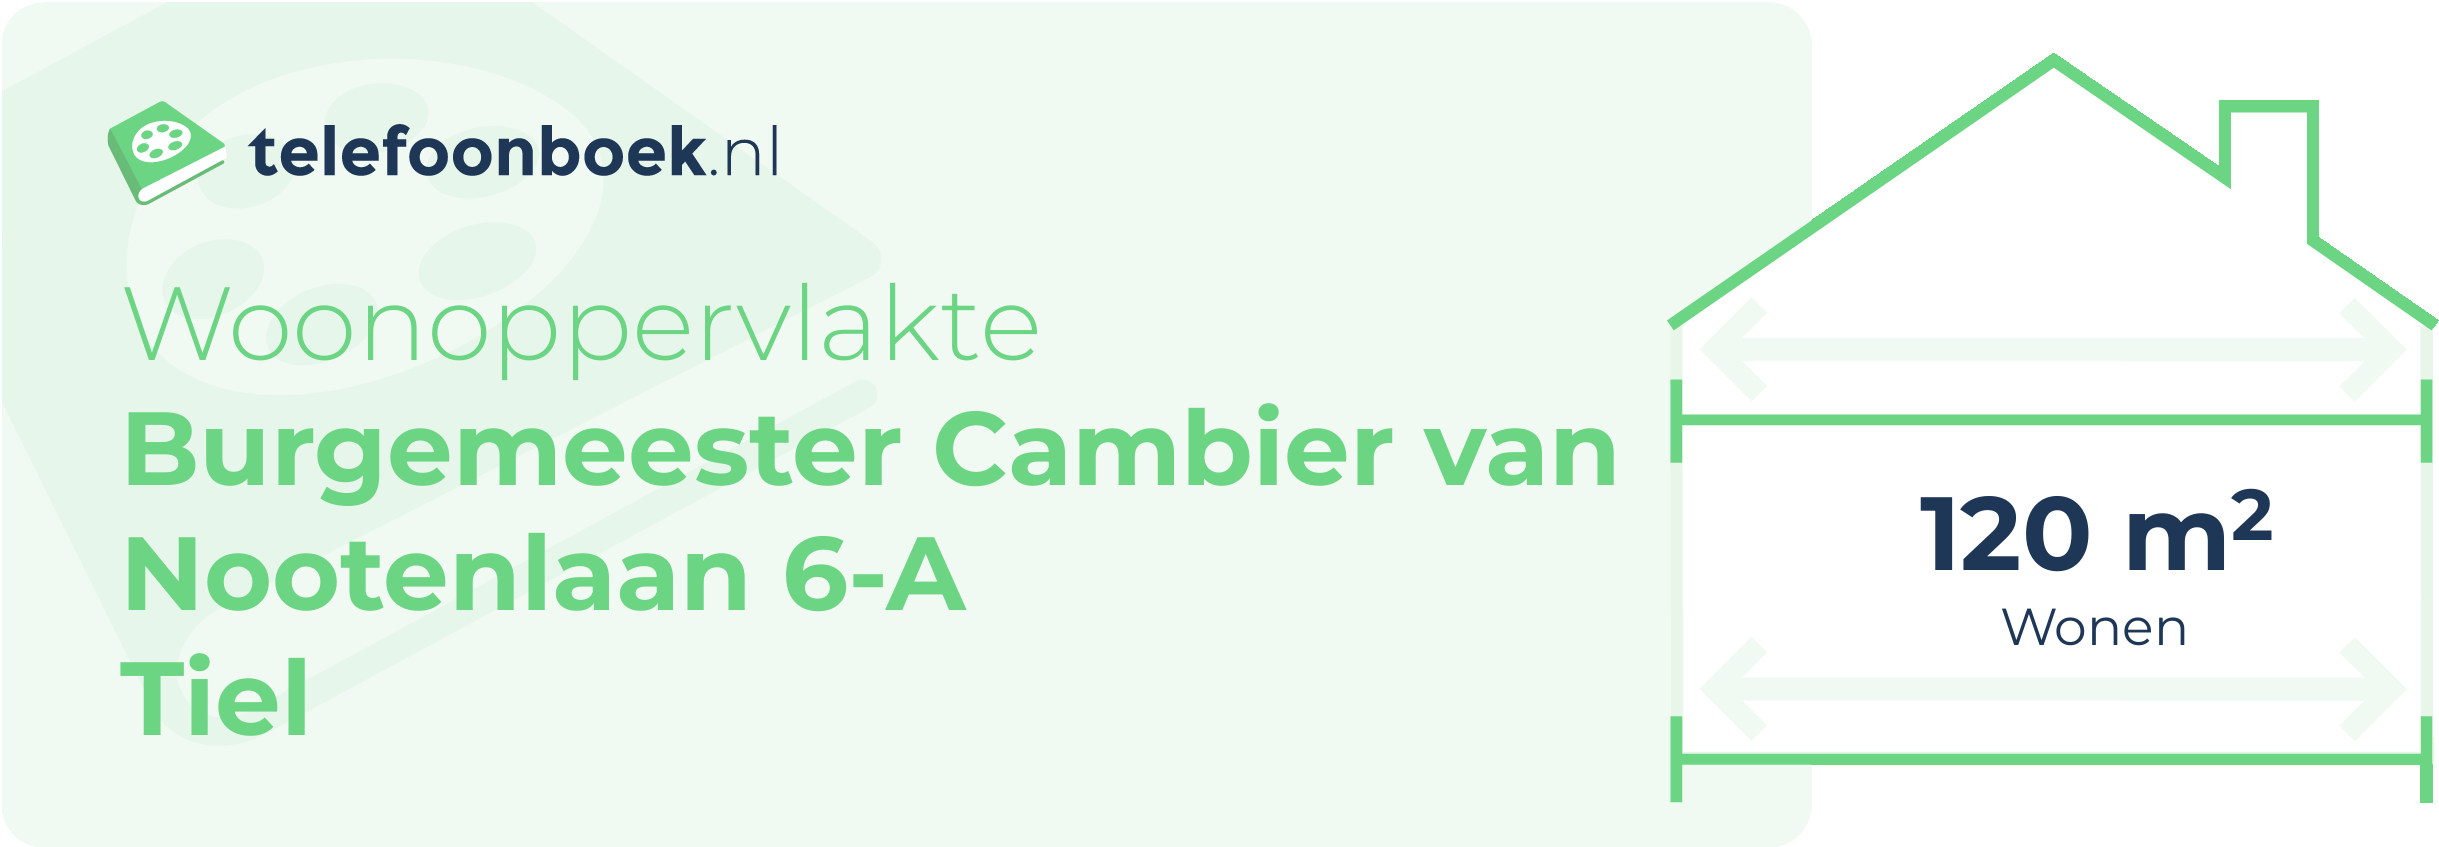 Woonoppervlakte Burgemeester Cambier Van Nootenlaan 6-A Tiel